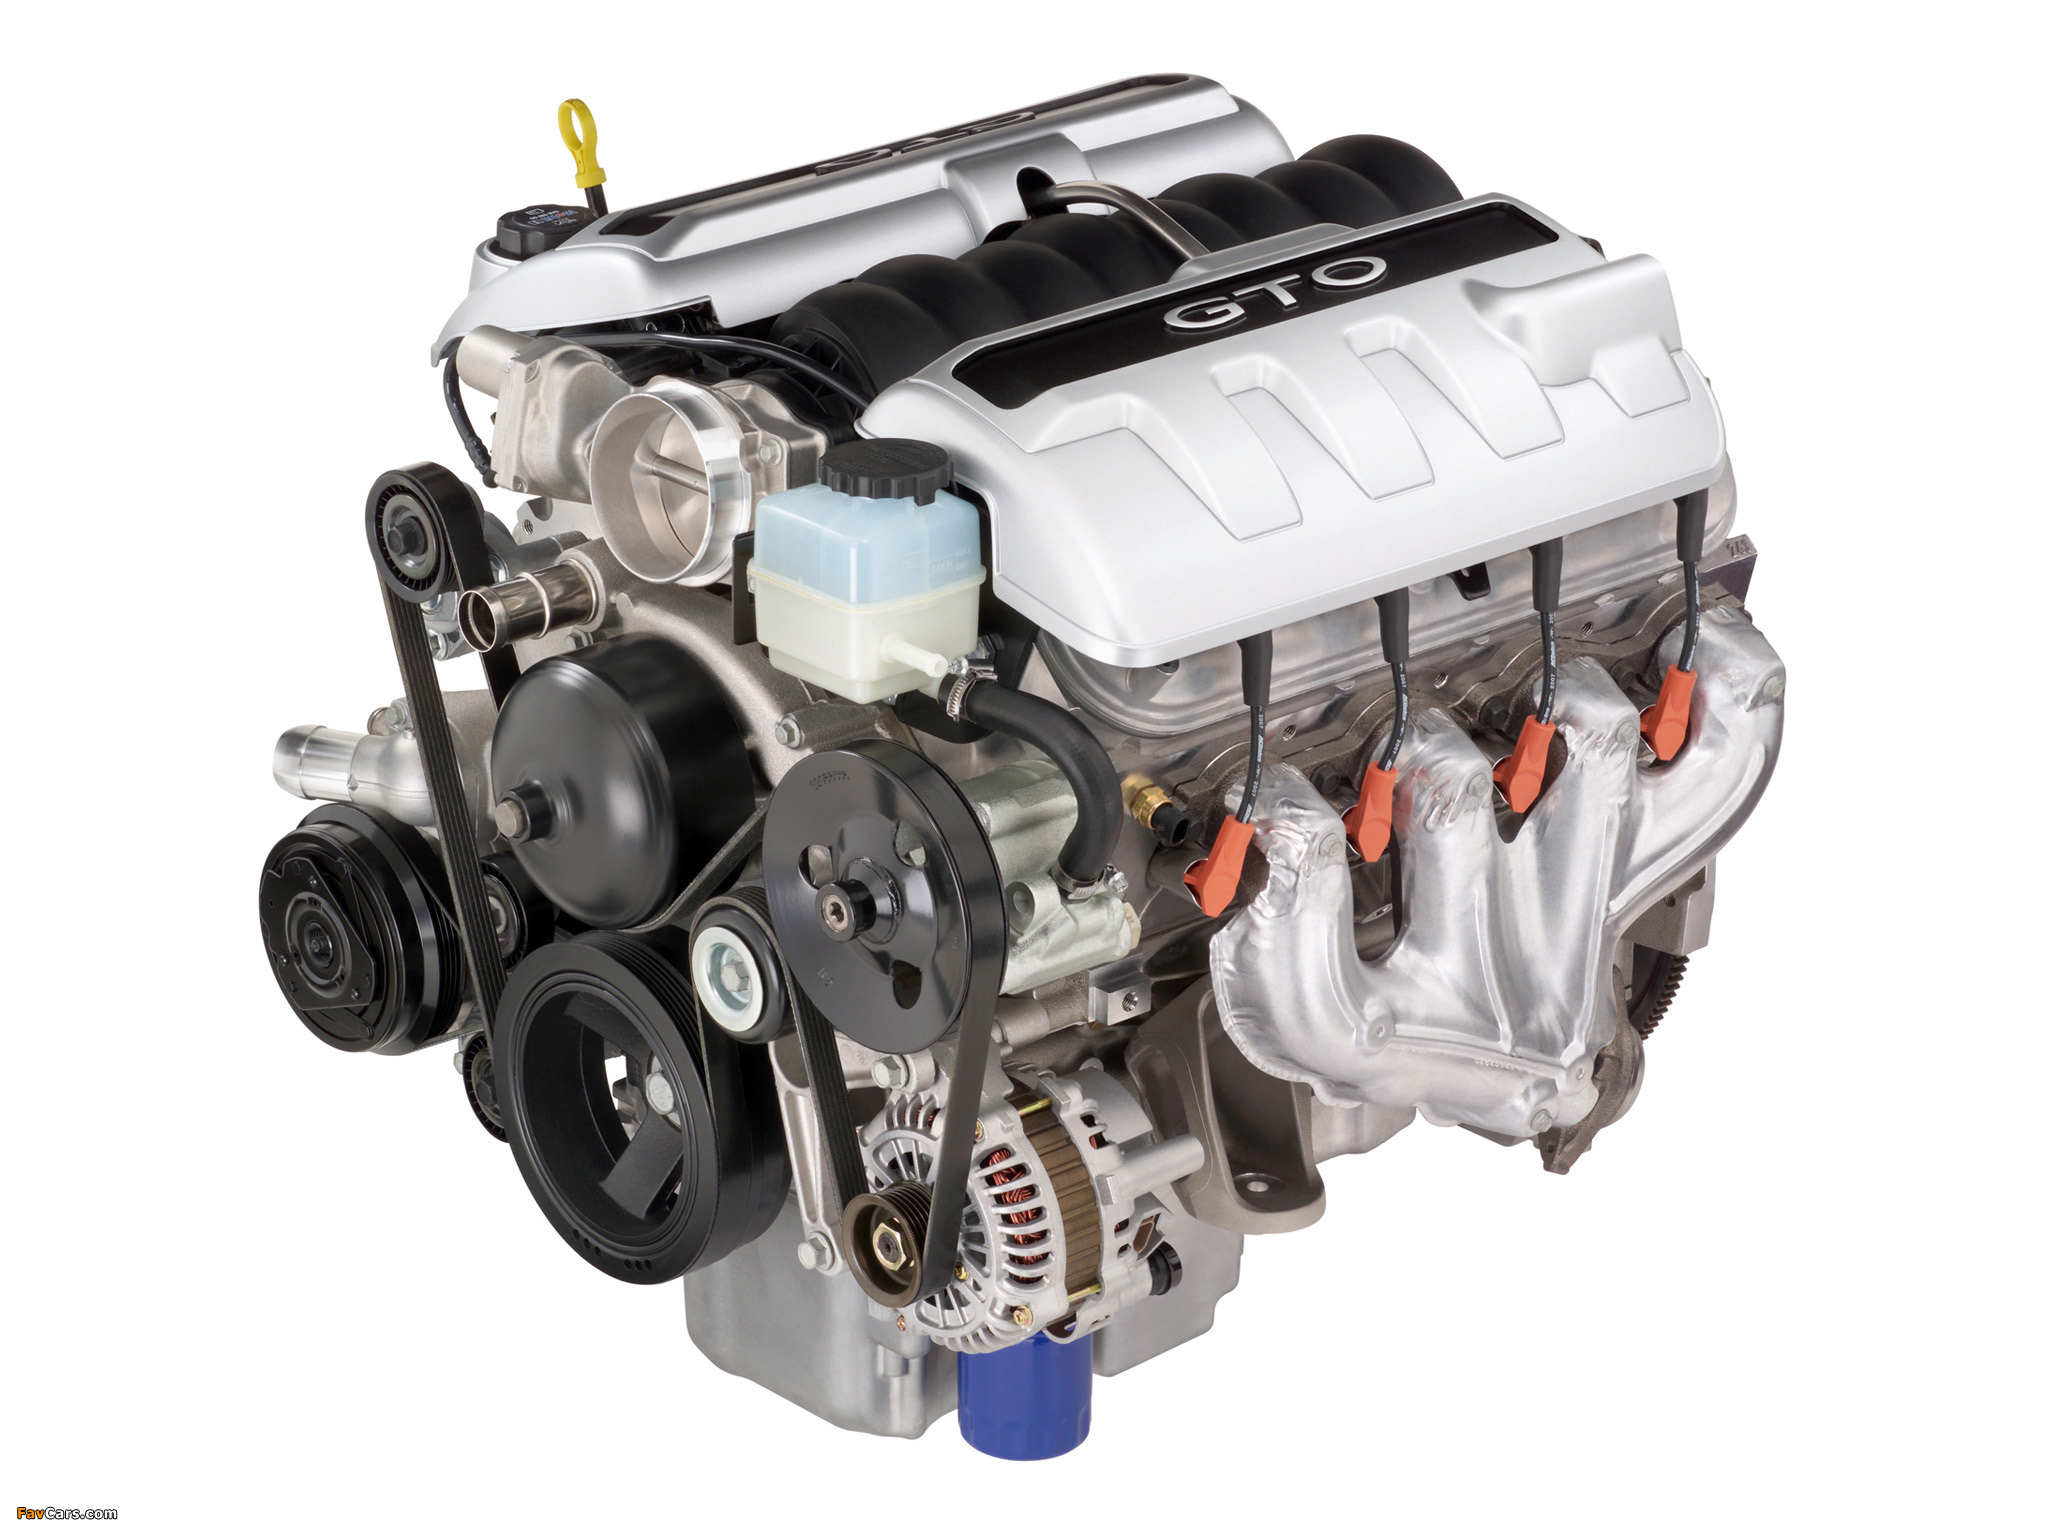 Мотор шеви. Chevrolet ls2 двигатель. Двигатель GM Chevrolet l98. Chevrolet 6,2 движок. Chevrolet ls2 engine.